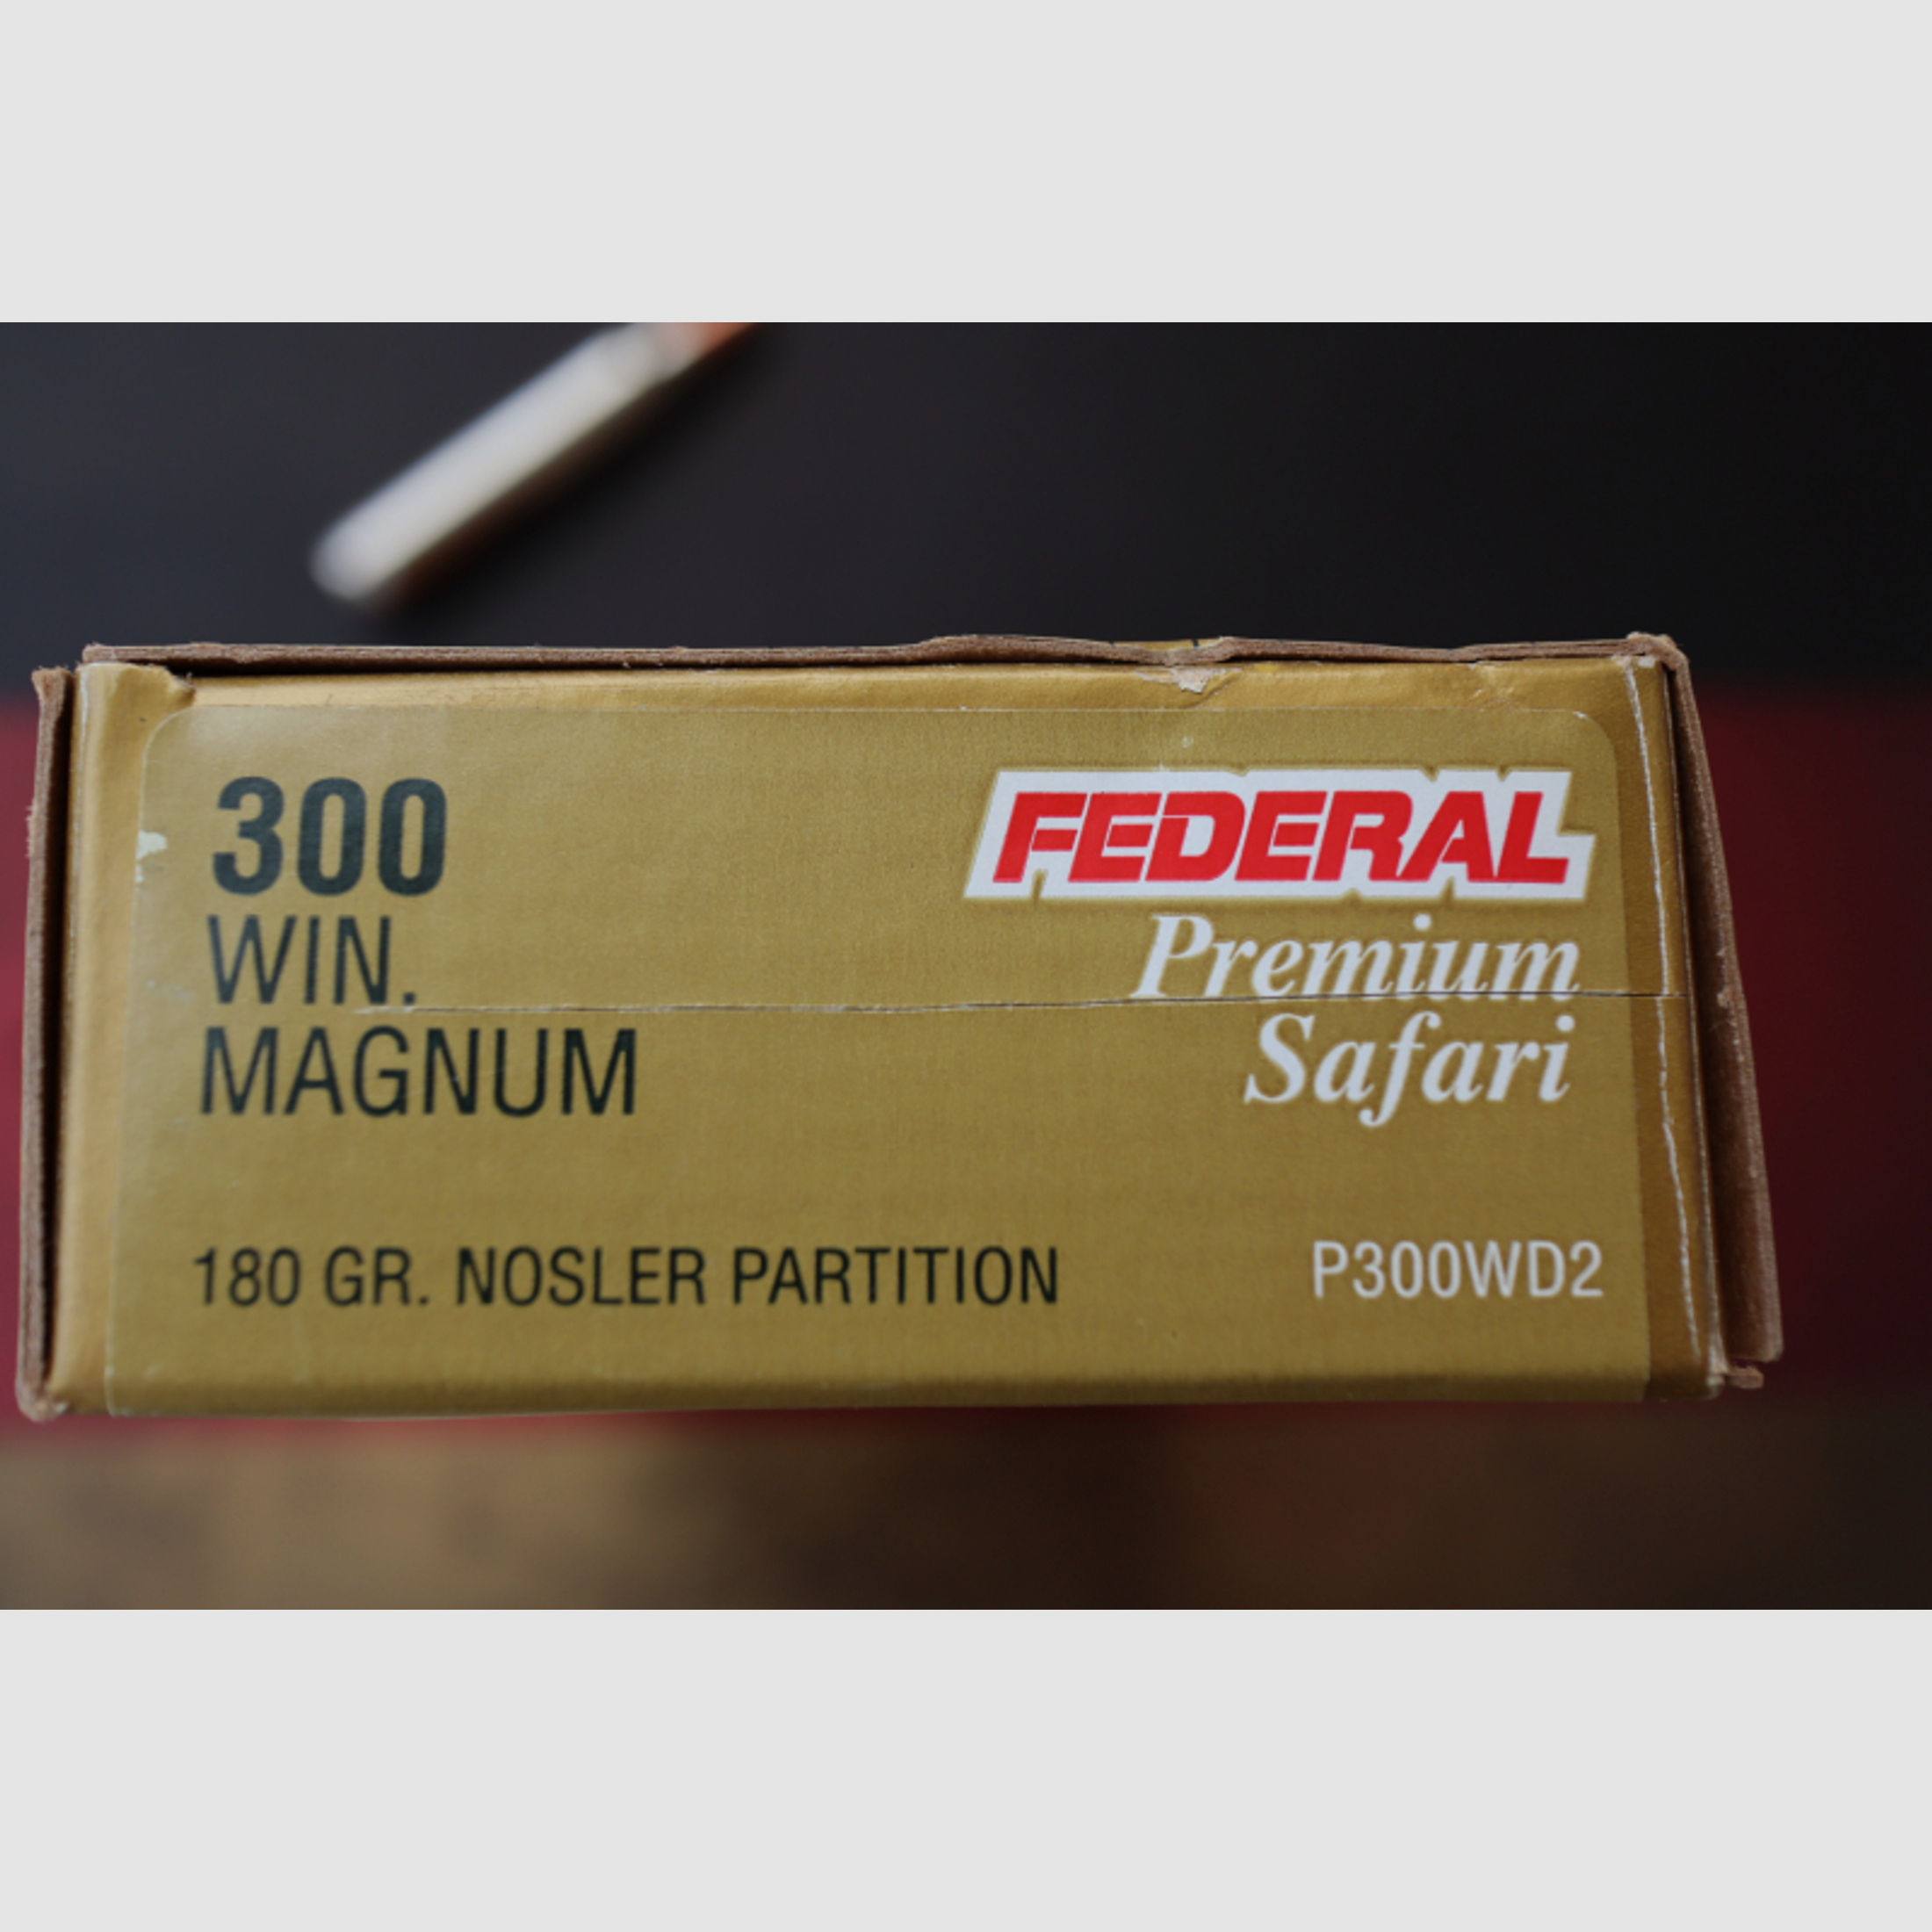 FEDERAL Premium Safari .300Win. Magnum, 180 Grain Nosler Partition